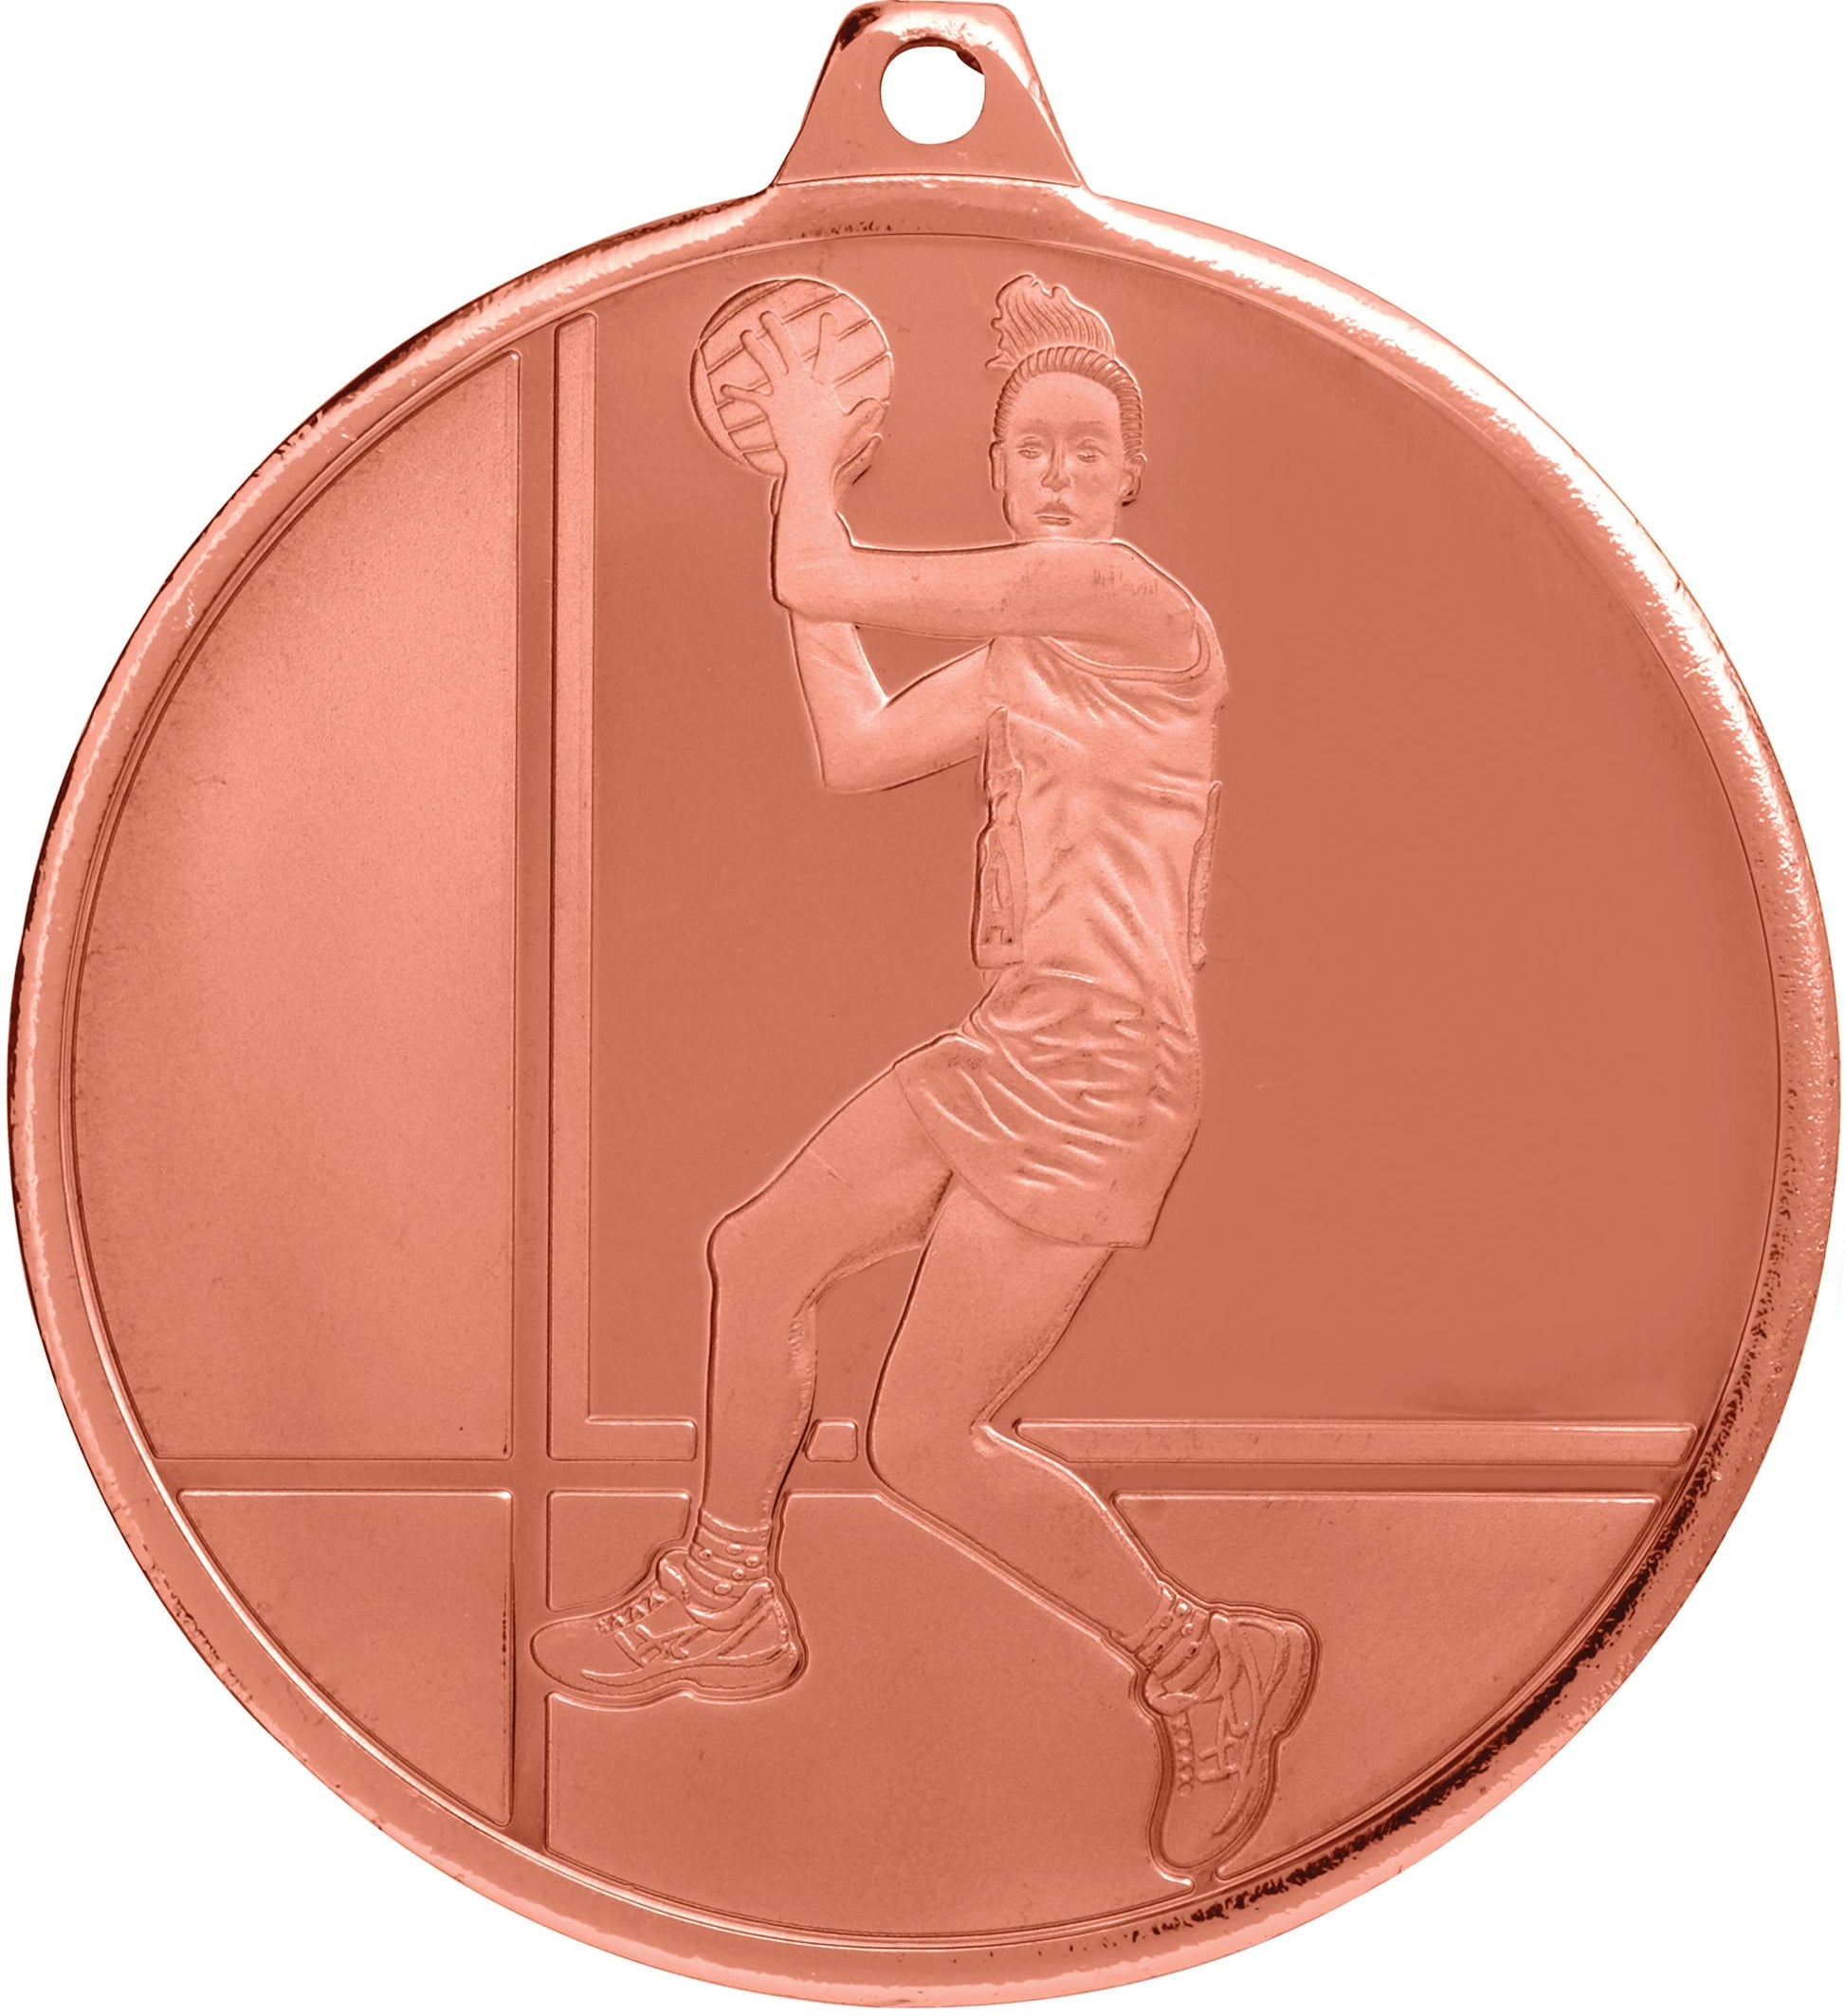 MZ911 Netball Medal